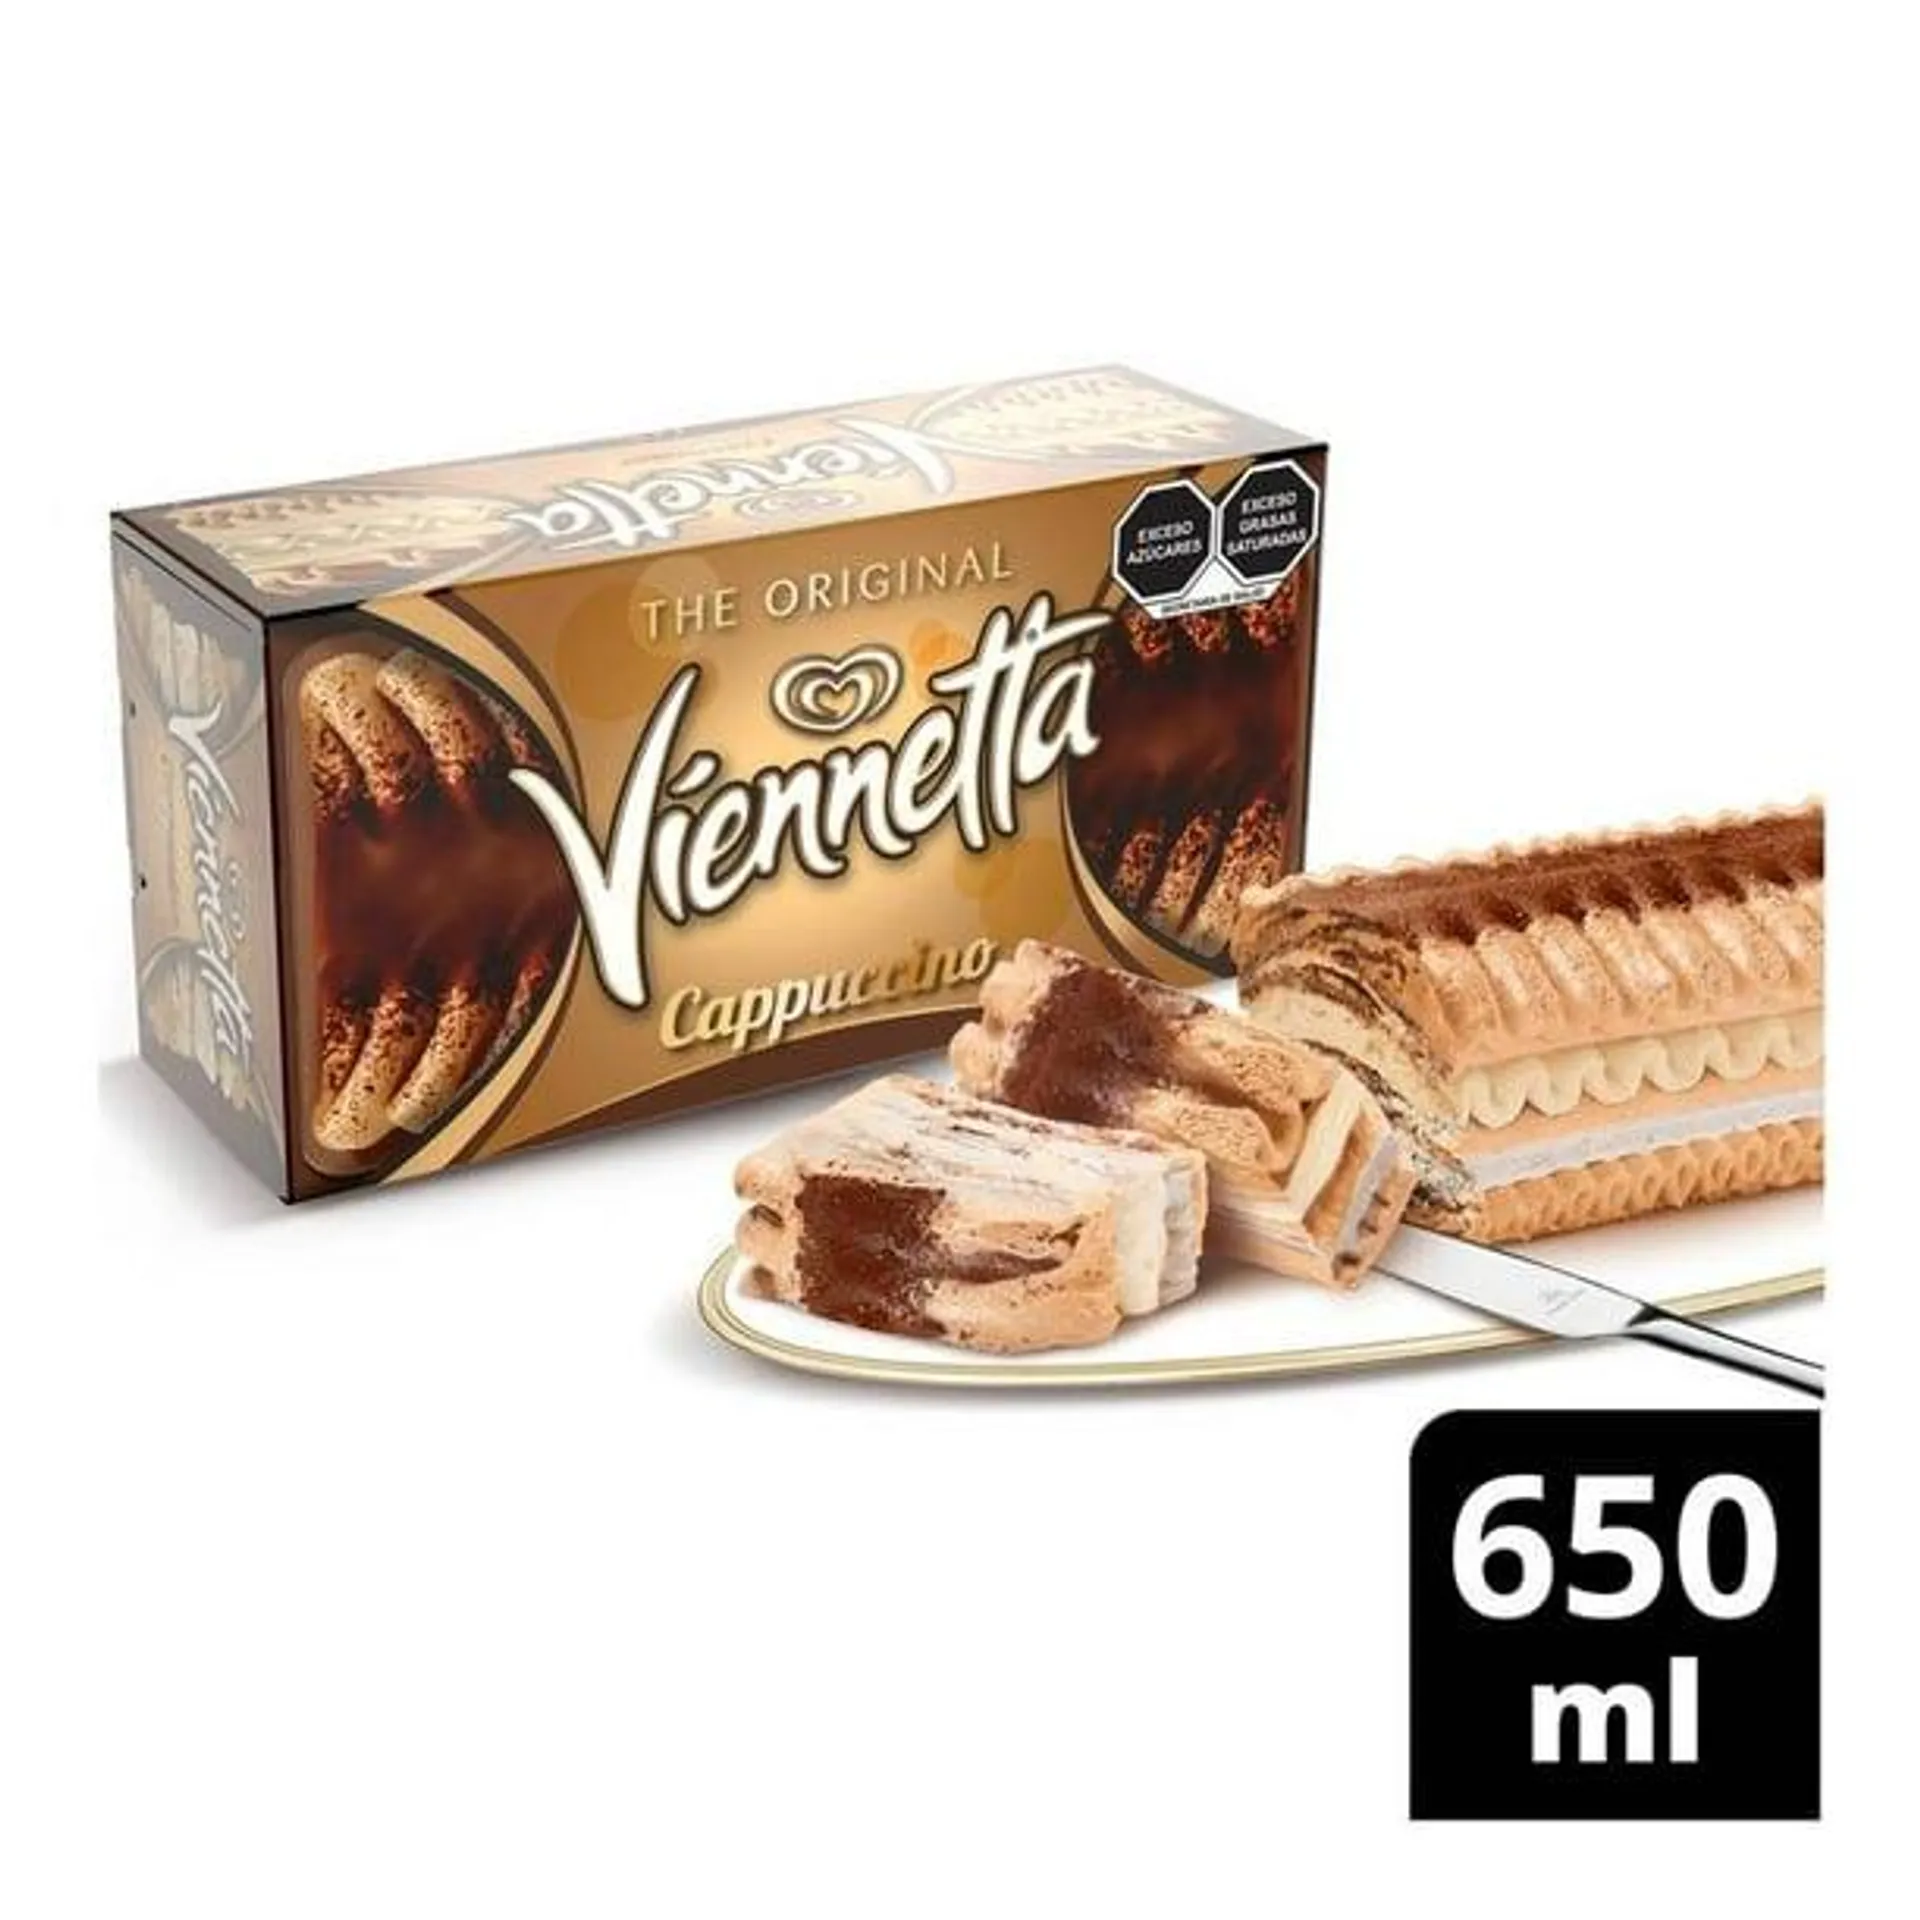 Pastel de helado Holanda Viennetta cappuccino 650 ml